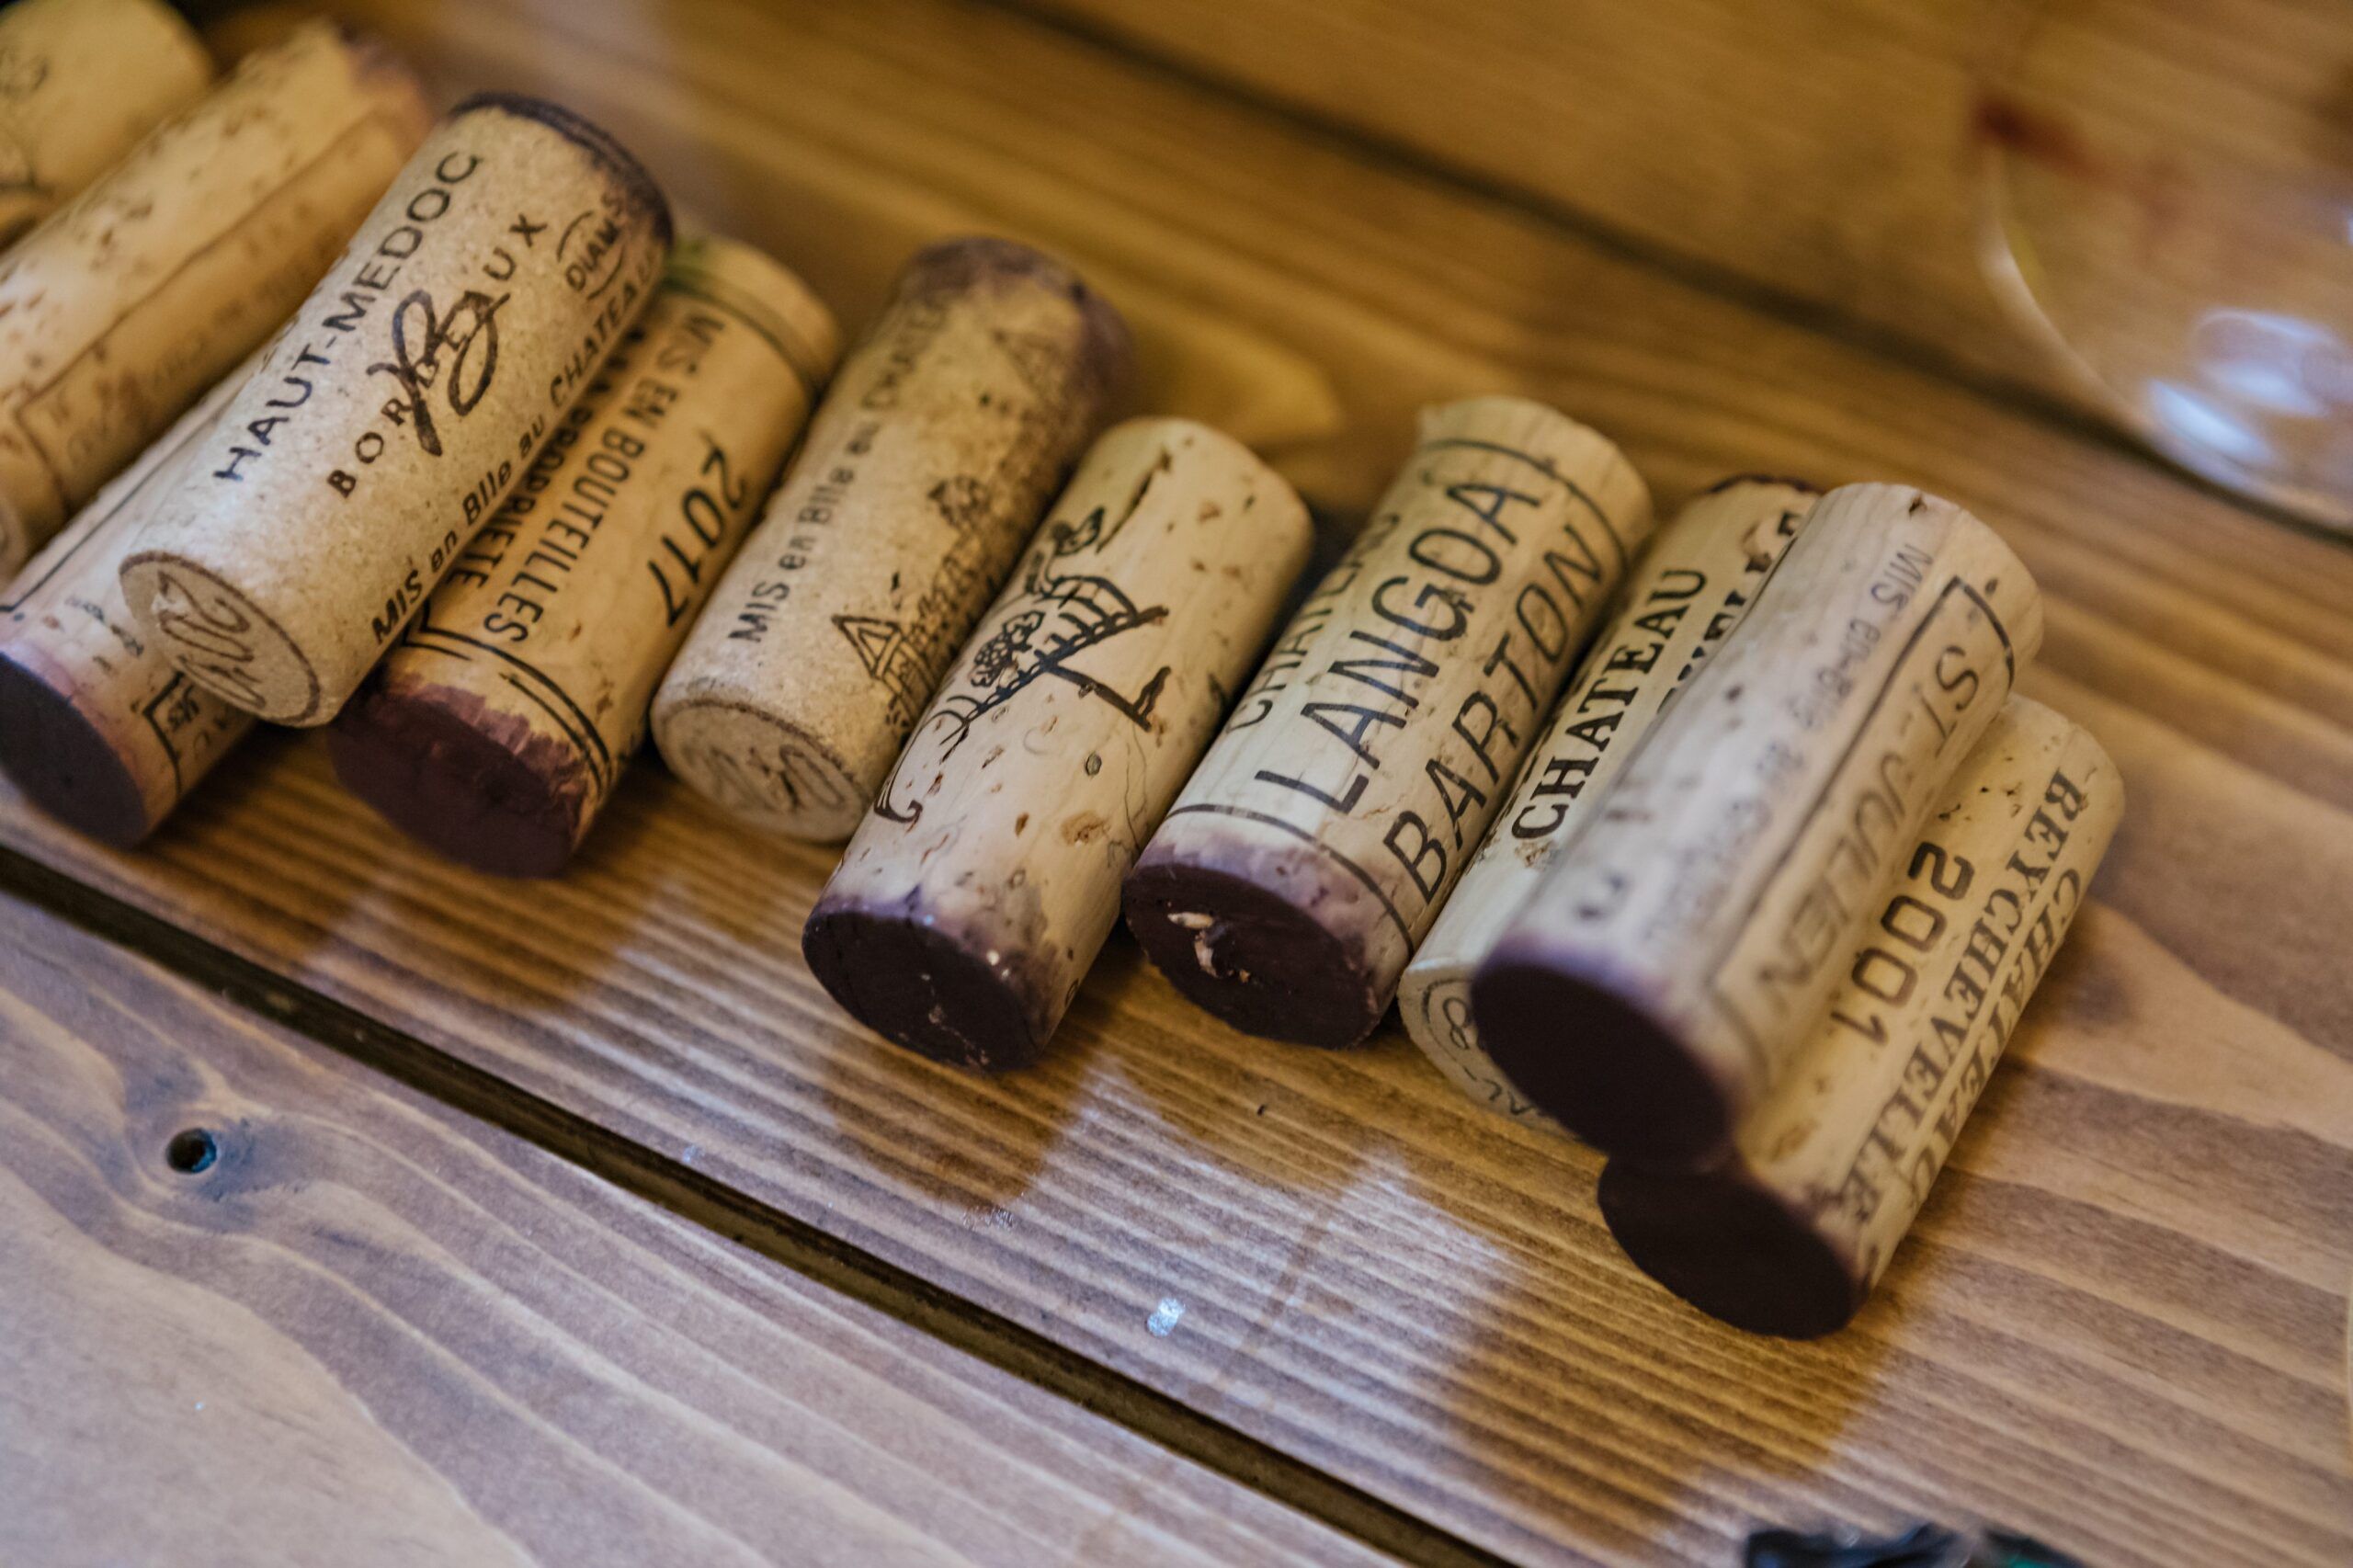 Krebiehl: Bibendum’s Bordeaux Collection is a reset for fine wine